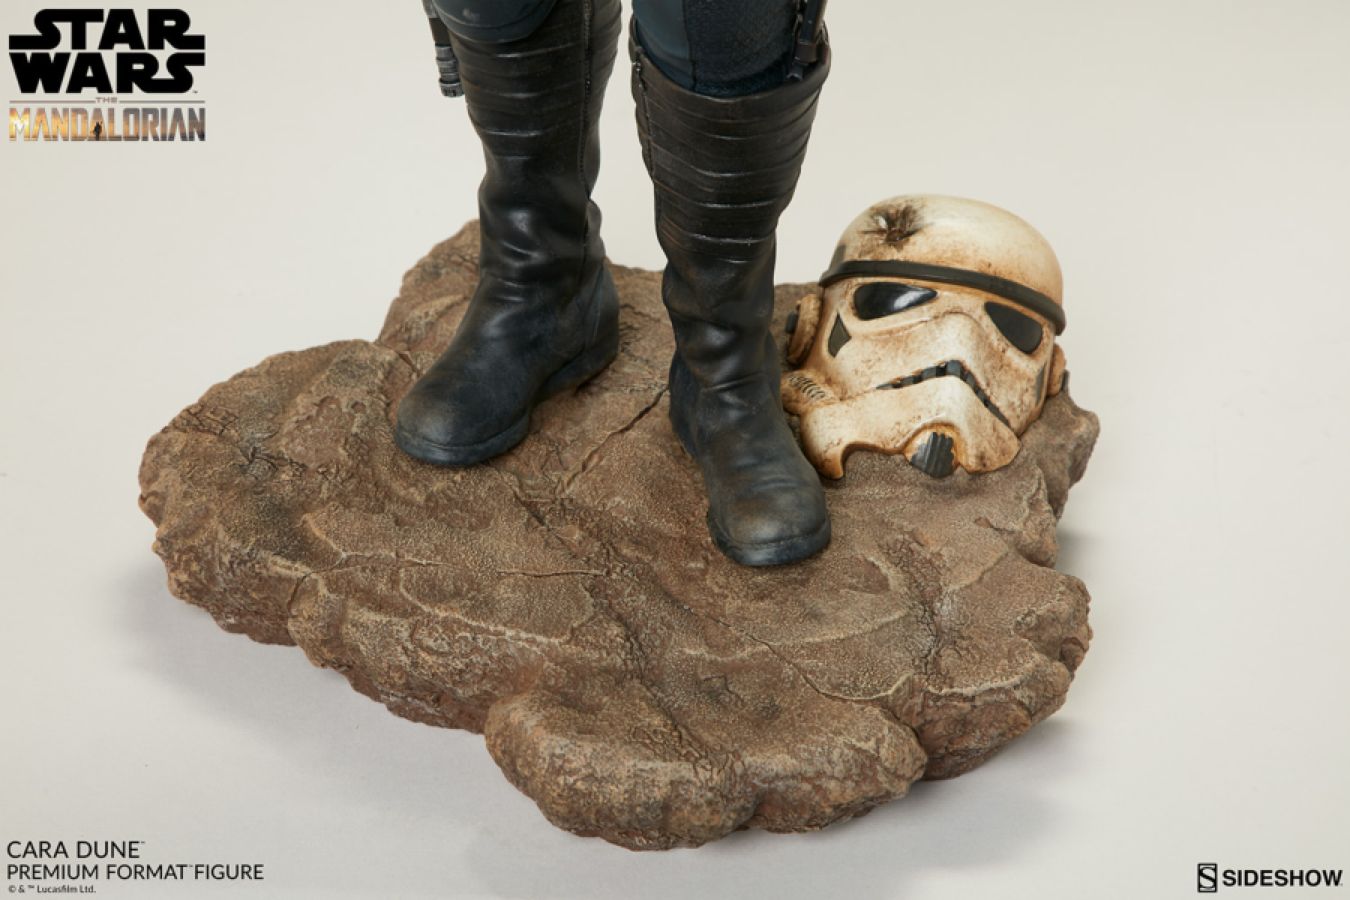 Star Wars: The Mandalorian - Cara Dune Premium Format Statue